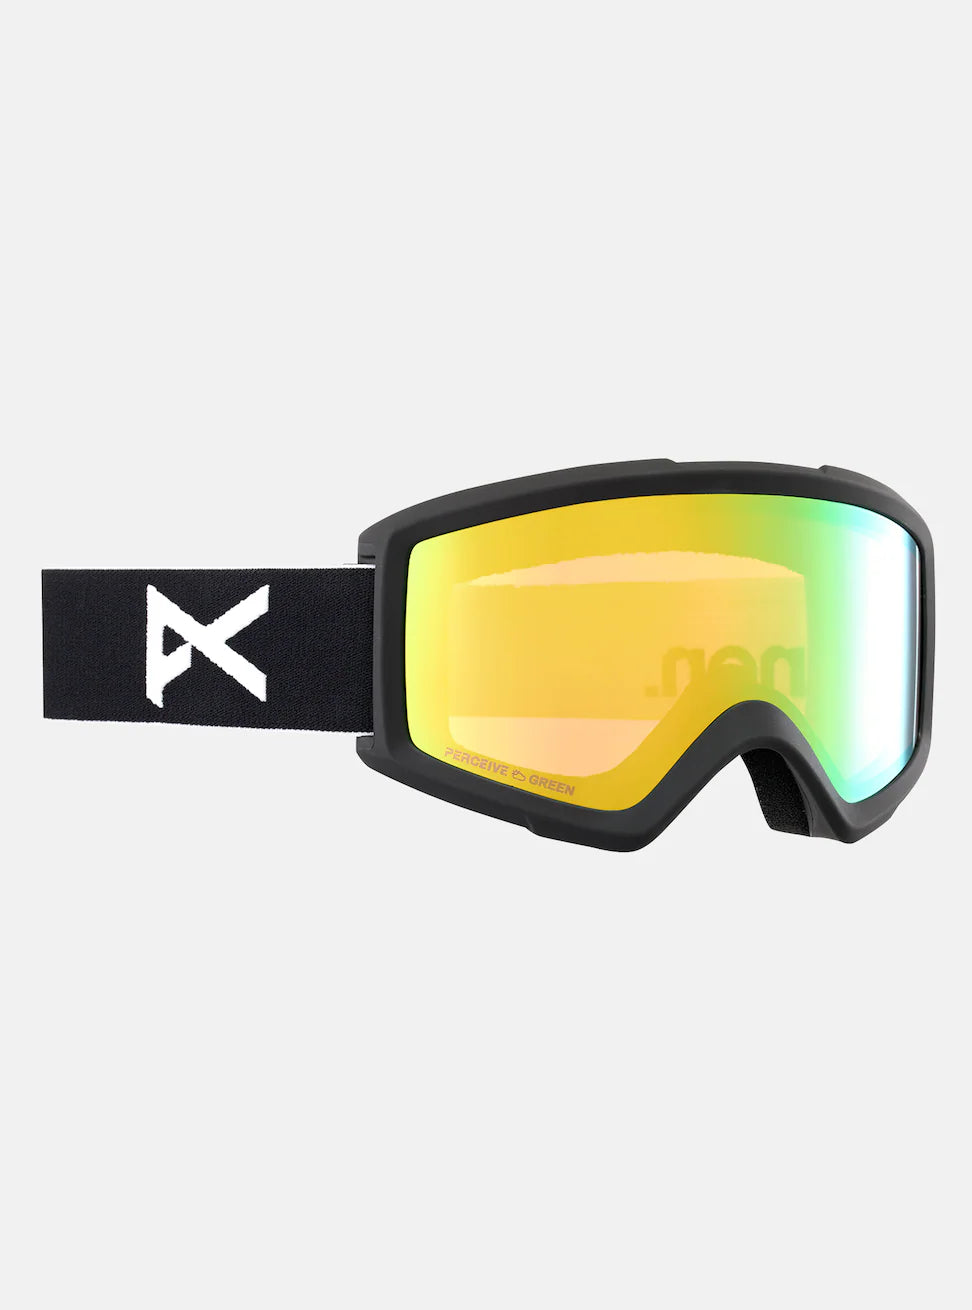 Helix 2.0 Goggles Black + Green Lens